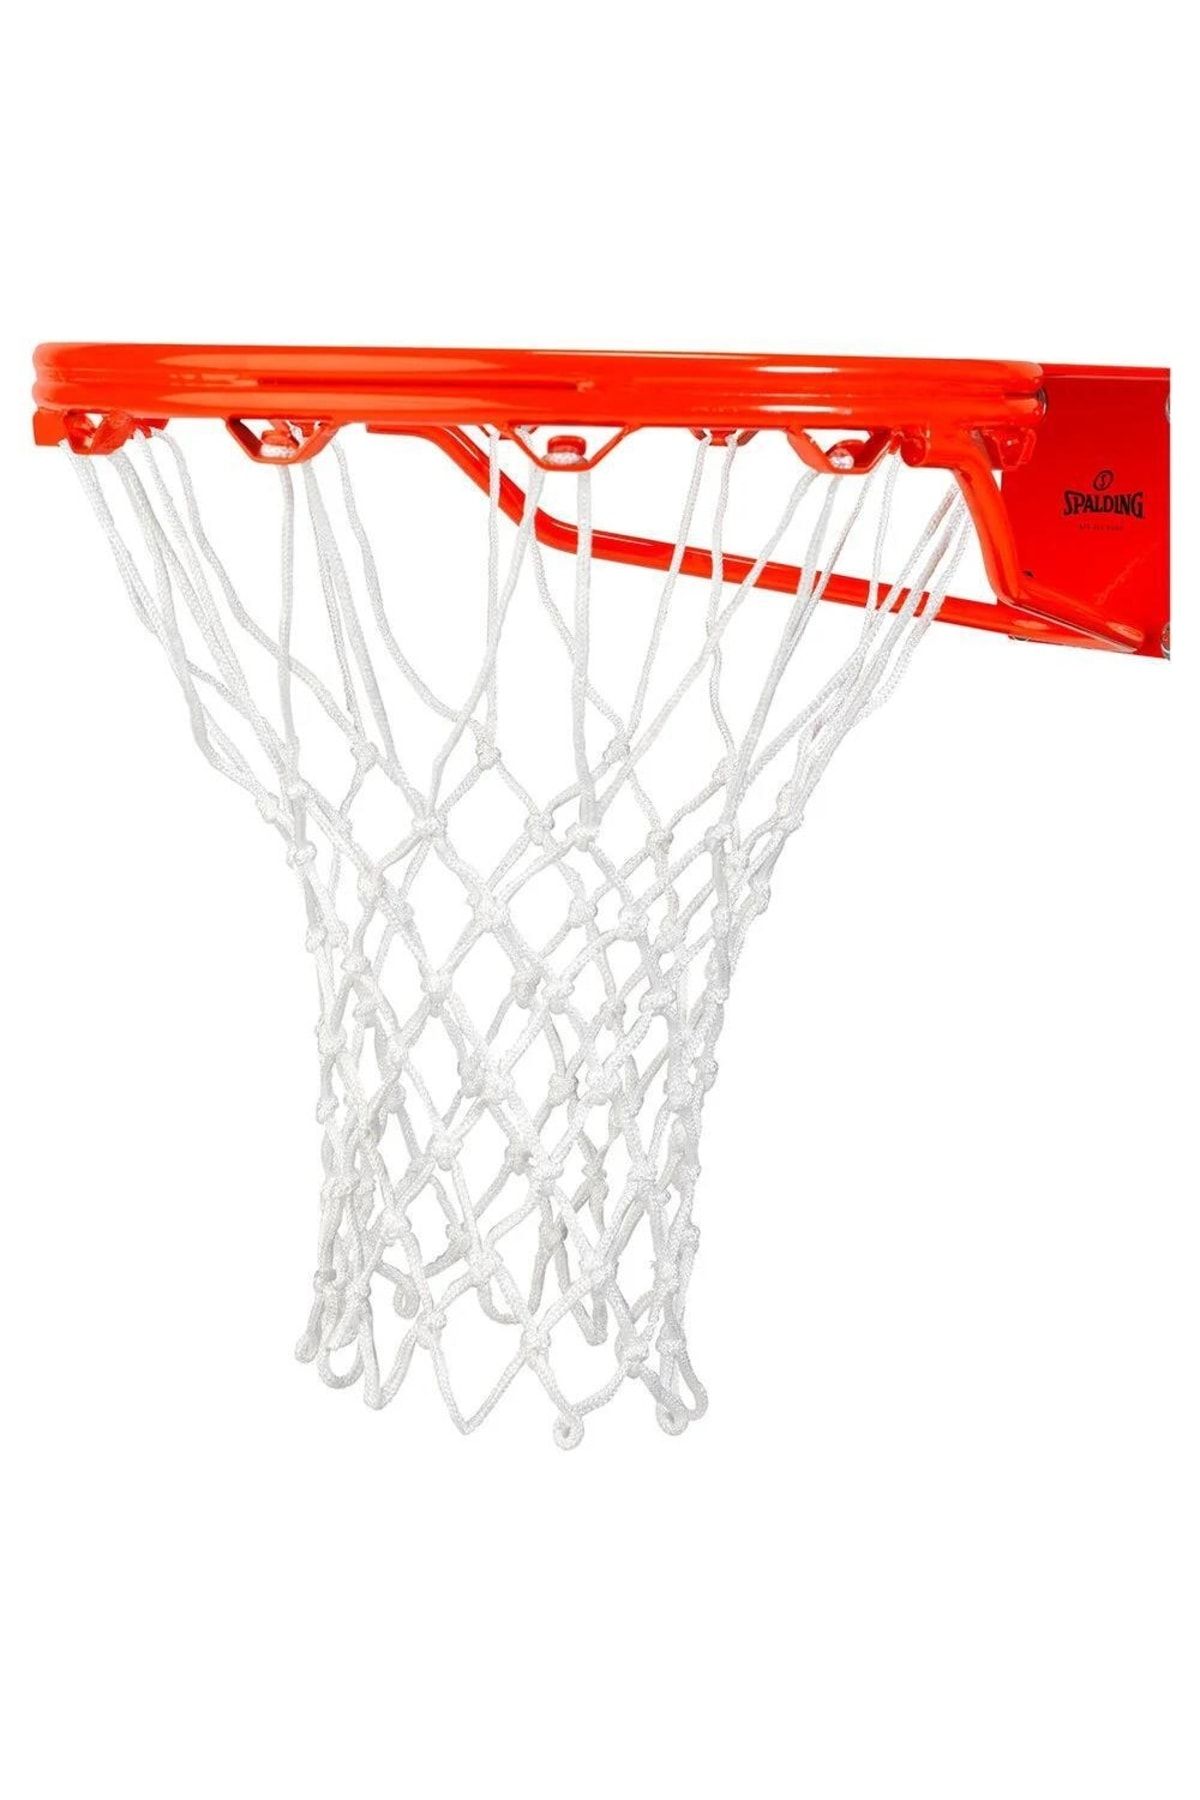 Spalding 8235scnr Heavy Duty Basketbol Ağı-filesi